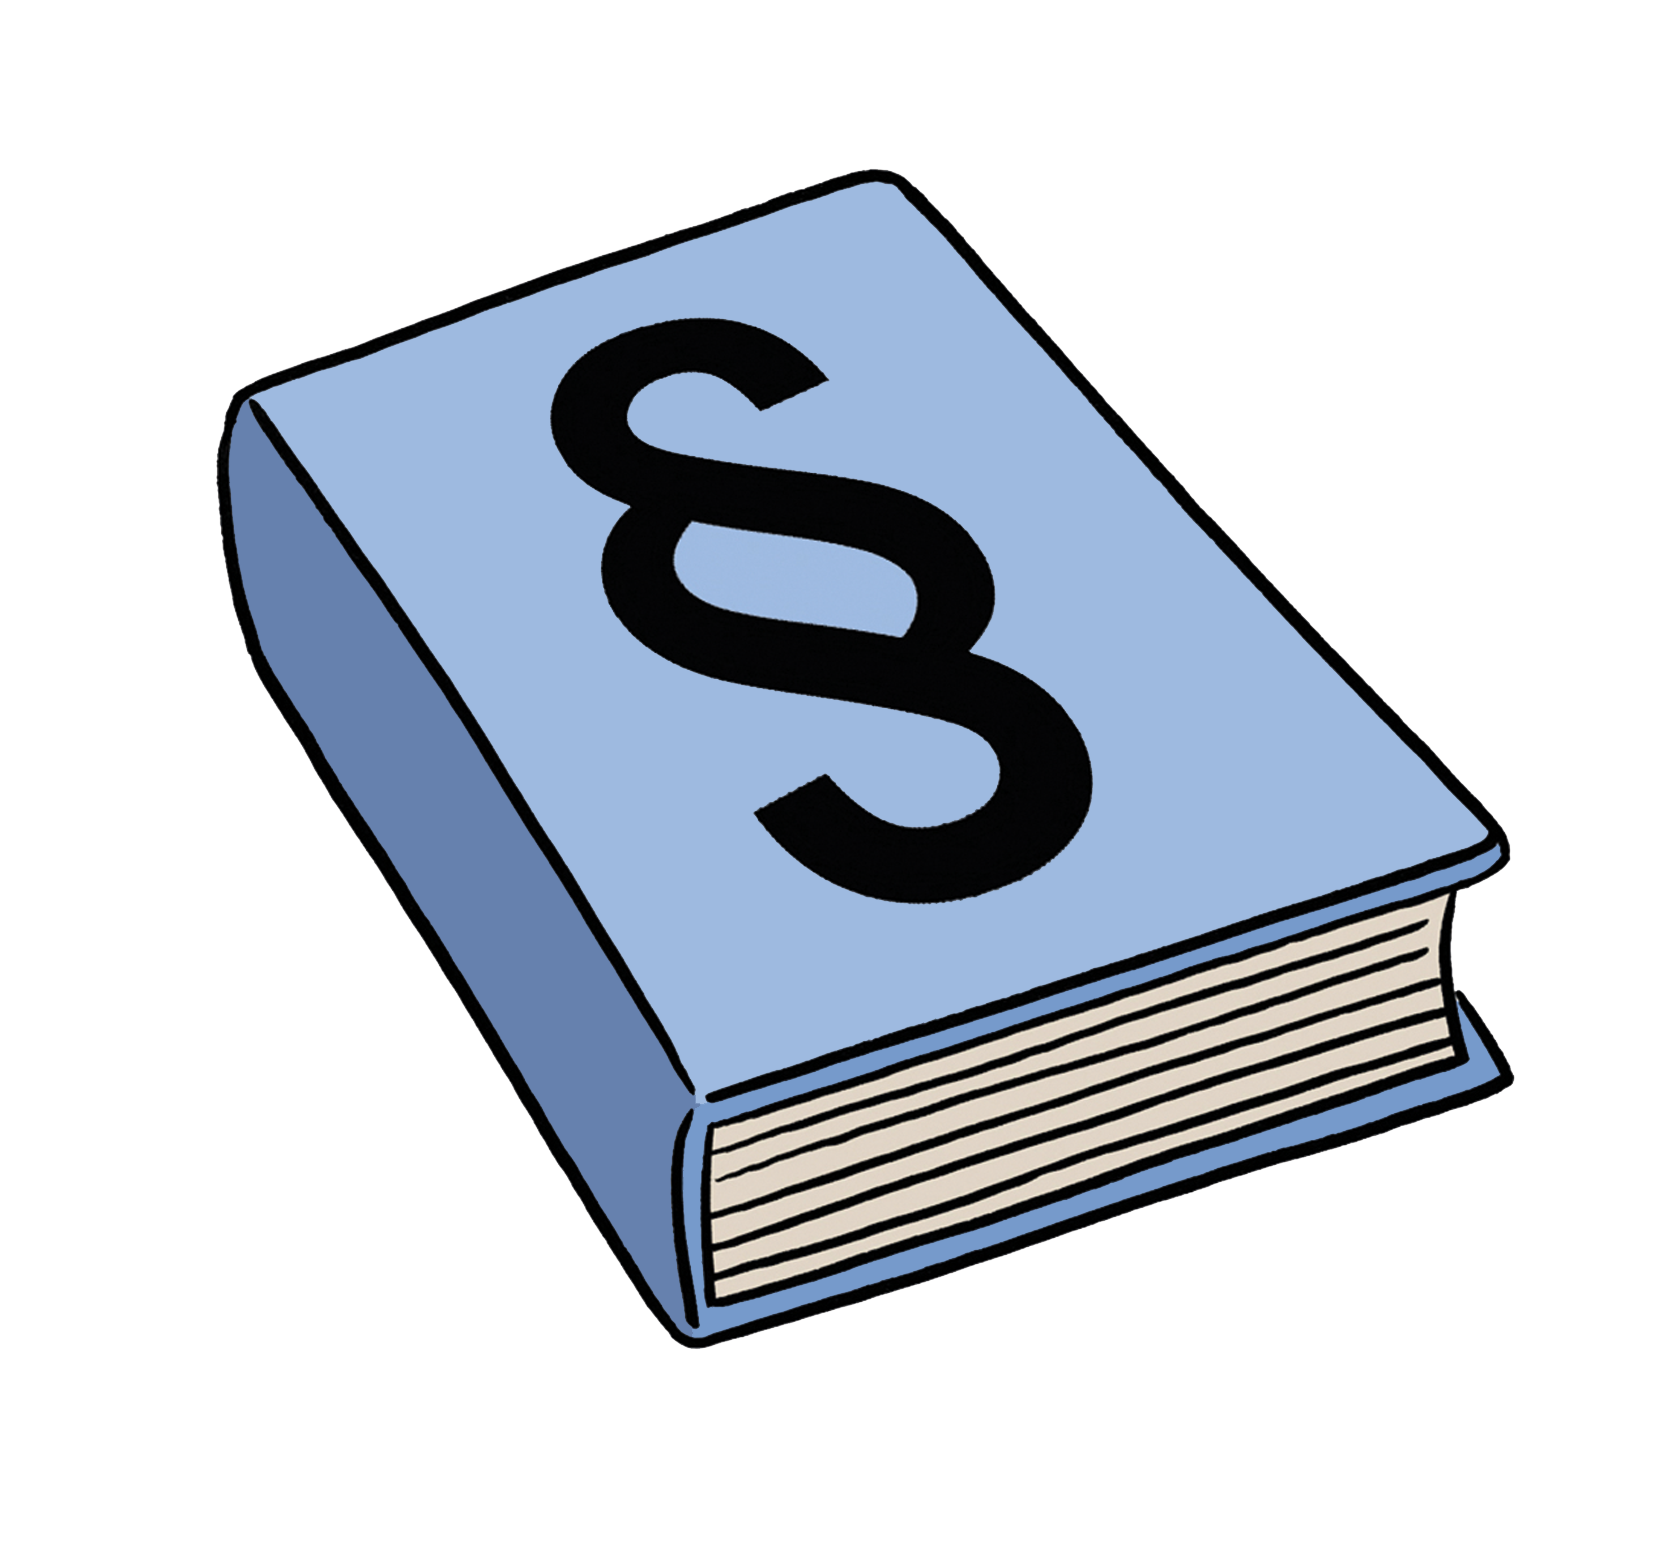 Illustration: Ein dickes, blaues Buch mit einem Paragraphen-Zeichen (§) darauf.